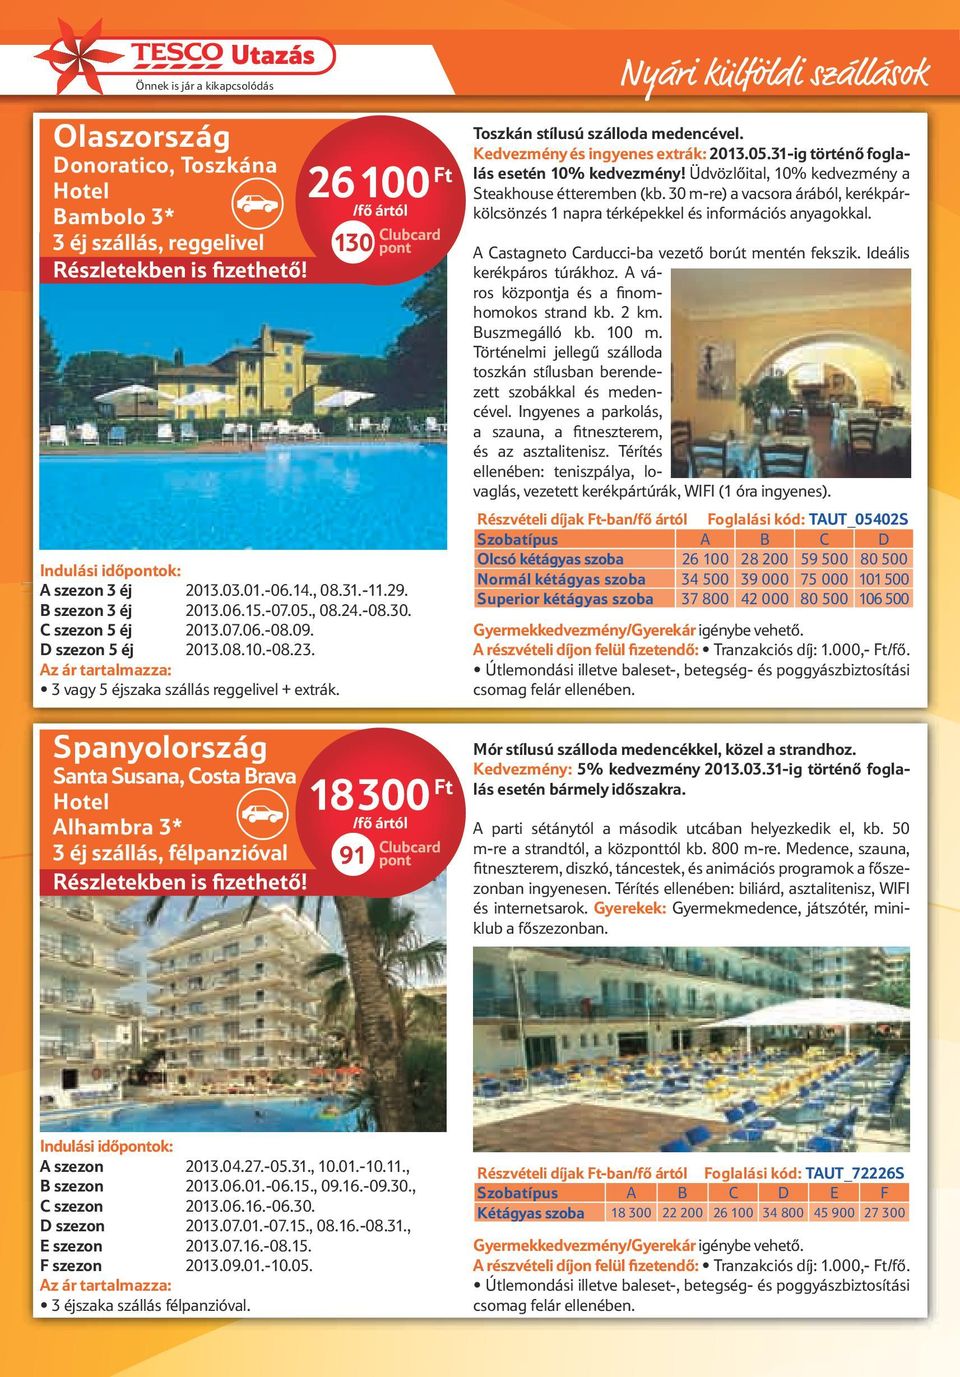 Spanyolország Santa Susana, Costa Brava Hotel lhambra 3* 3 éj szállás, félpanzióval 2 100 Ft 130 pont 18 300 Ft 91 pont Nyári külföldi szállások Toszkán stílusú szálloda medencével.